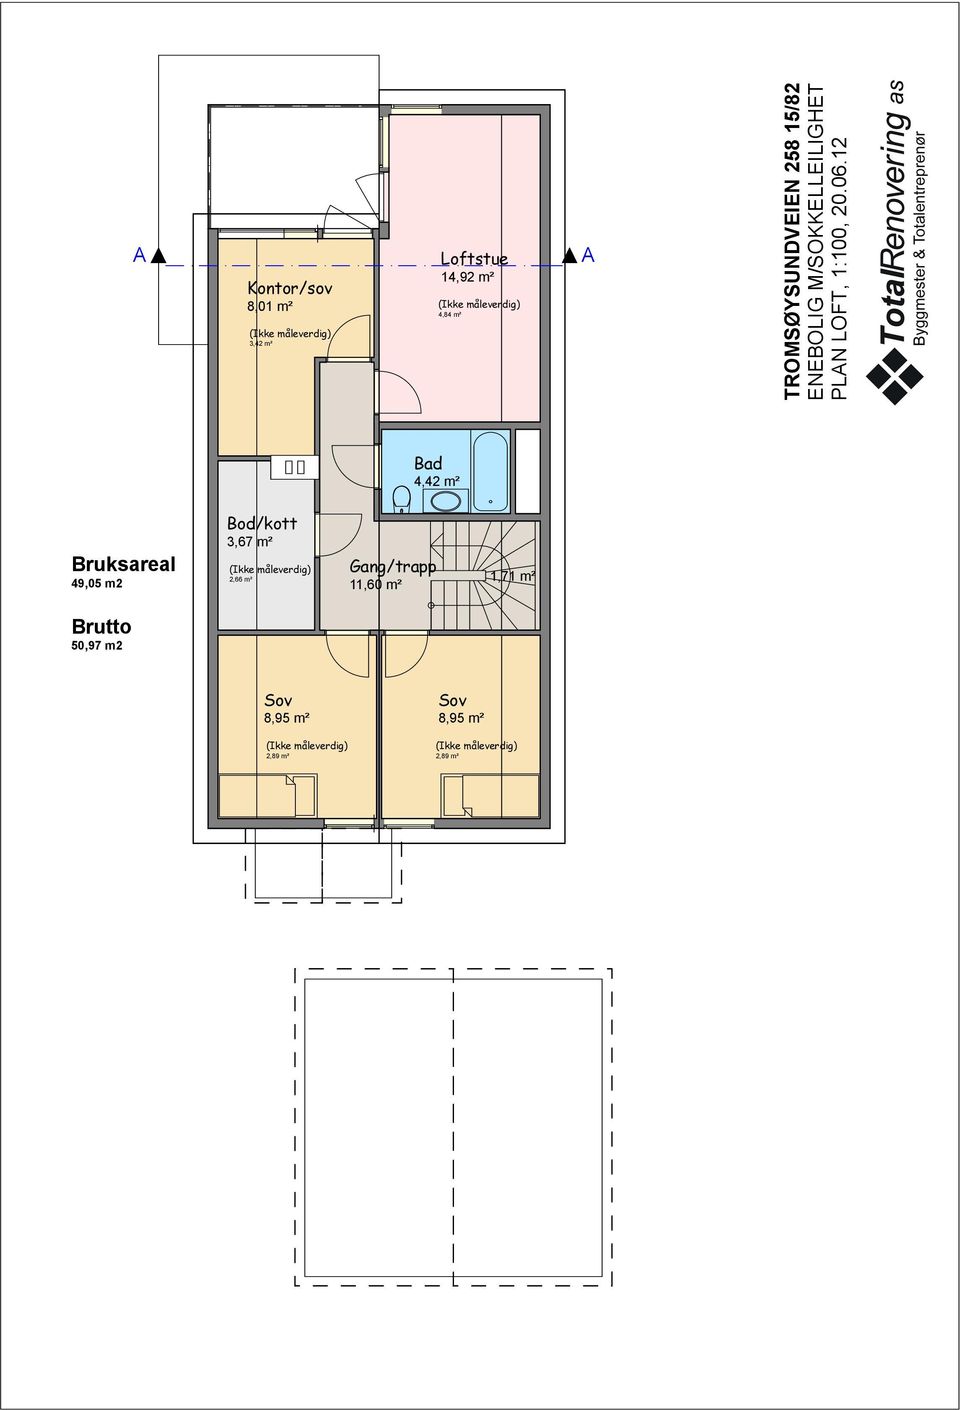 12 Bad 4,42 m² Bruksareal 49,05 m2 Bod/kott 3,67 m² (Ikke måleverdig) 2,66 m² Gang/trapp